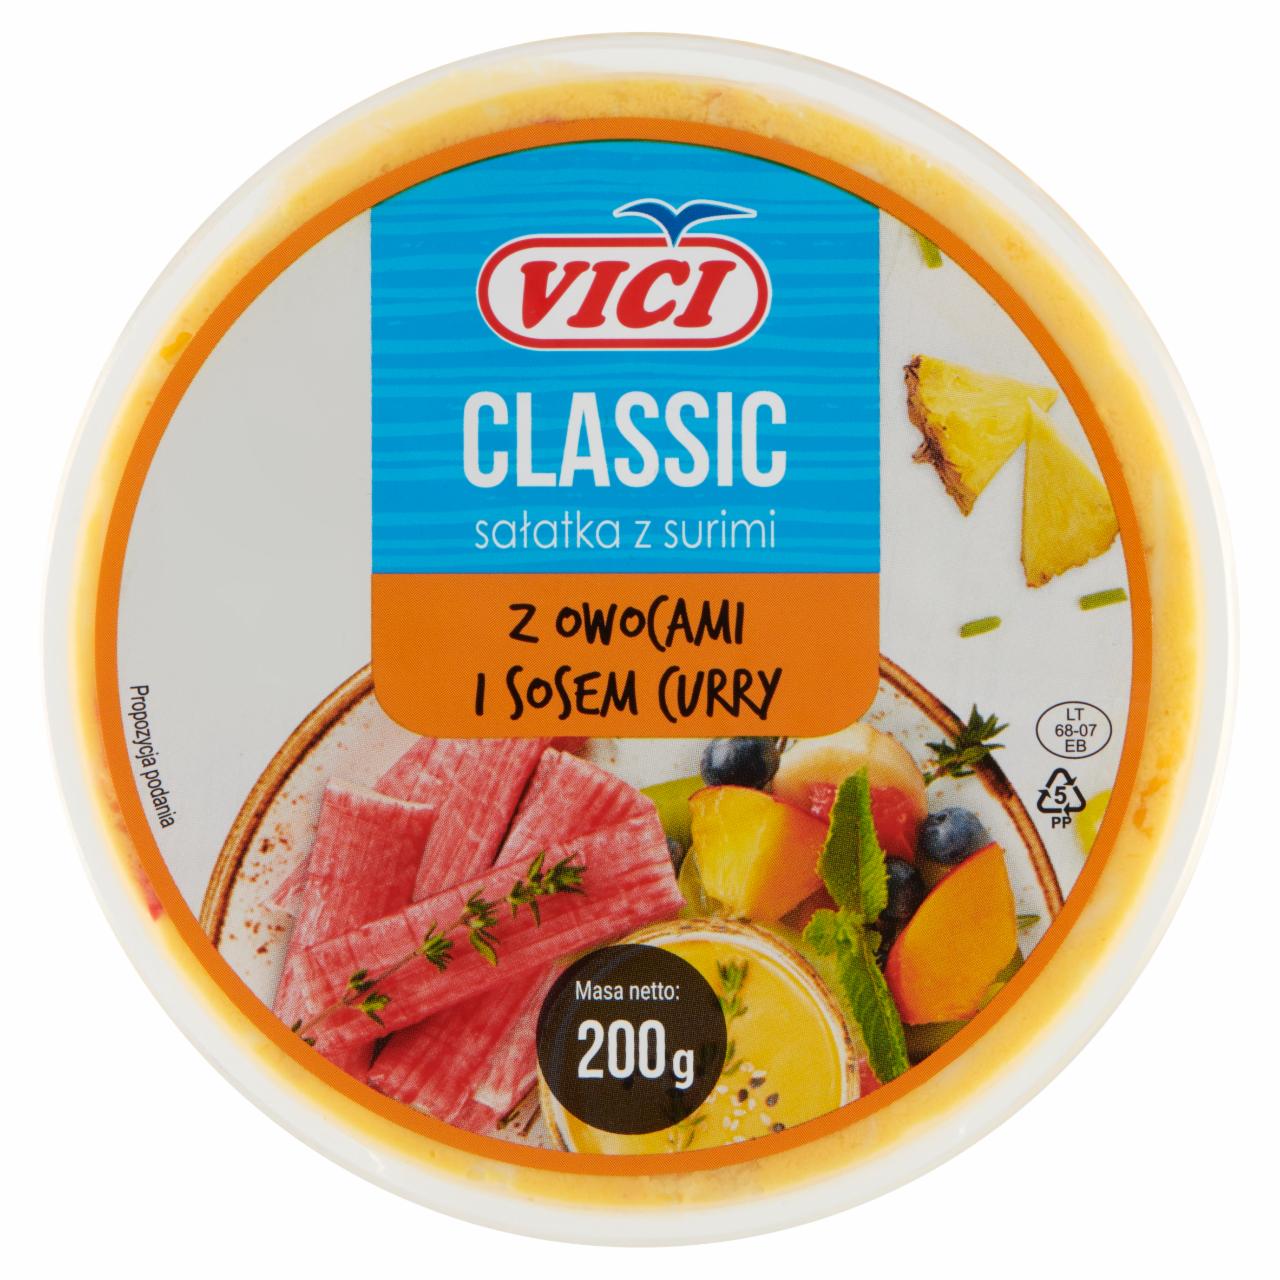 Zdjęcia - Vici Classic Sałatka z surimi z owocami i sosem curry 200 g